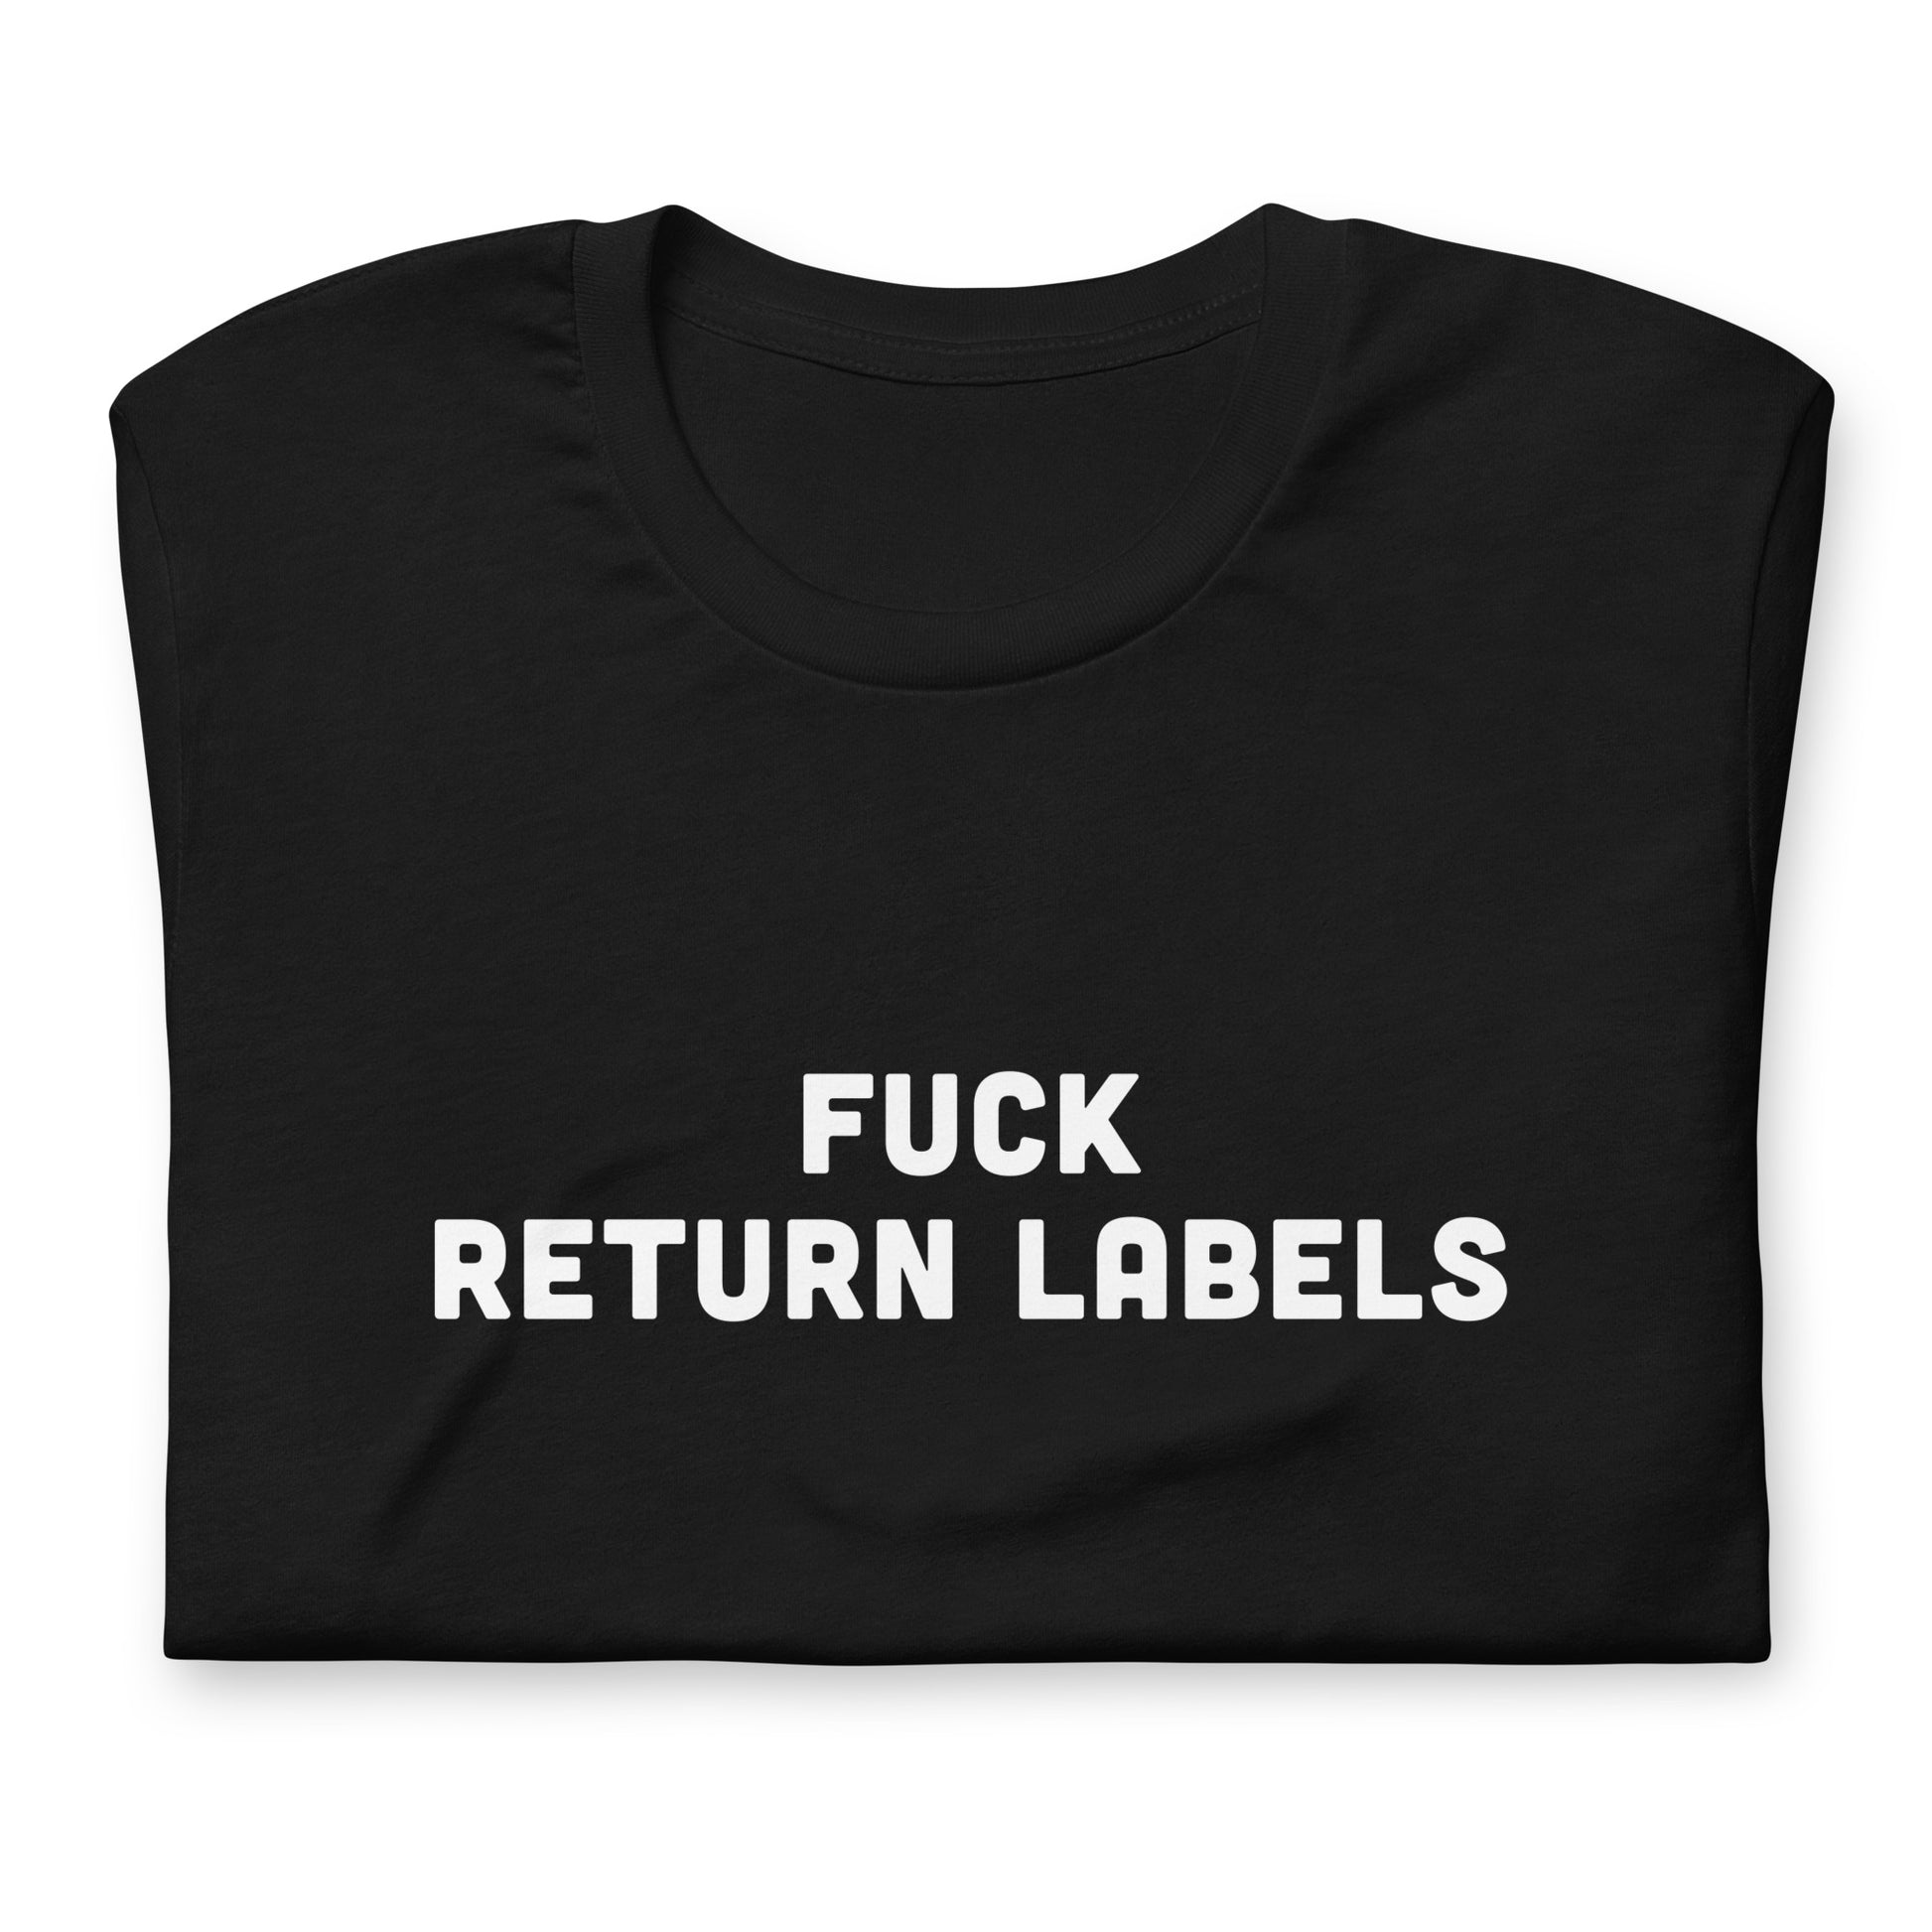 Fuck Return Labels T-Shirt Size M Color Black